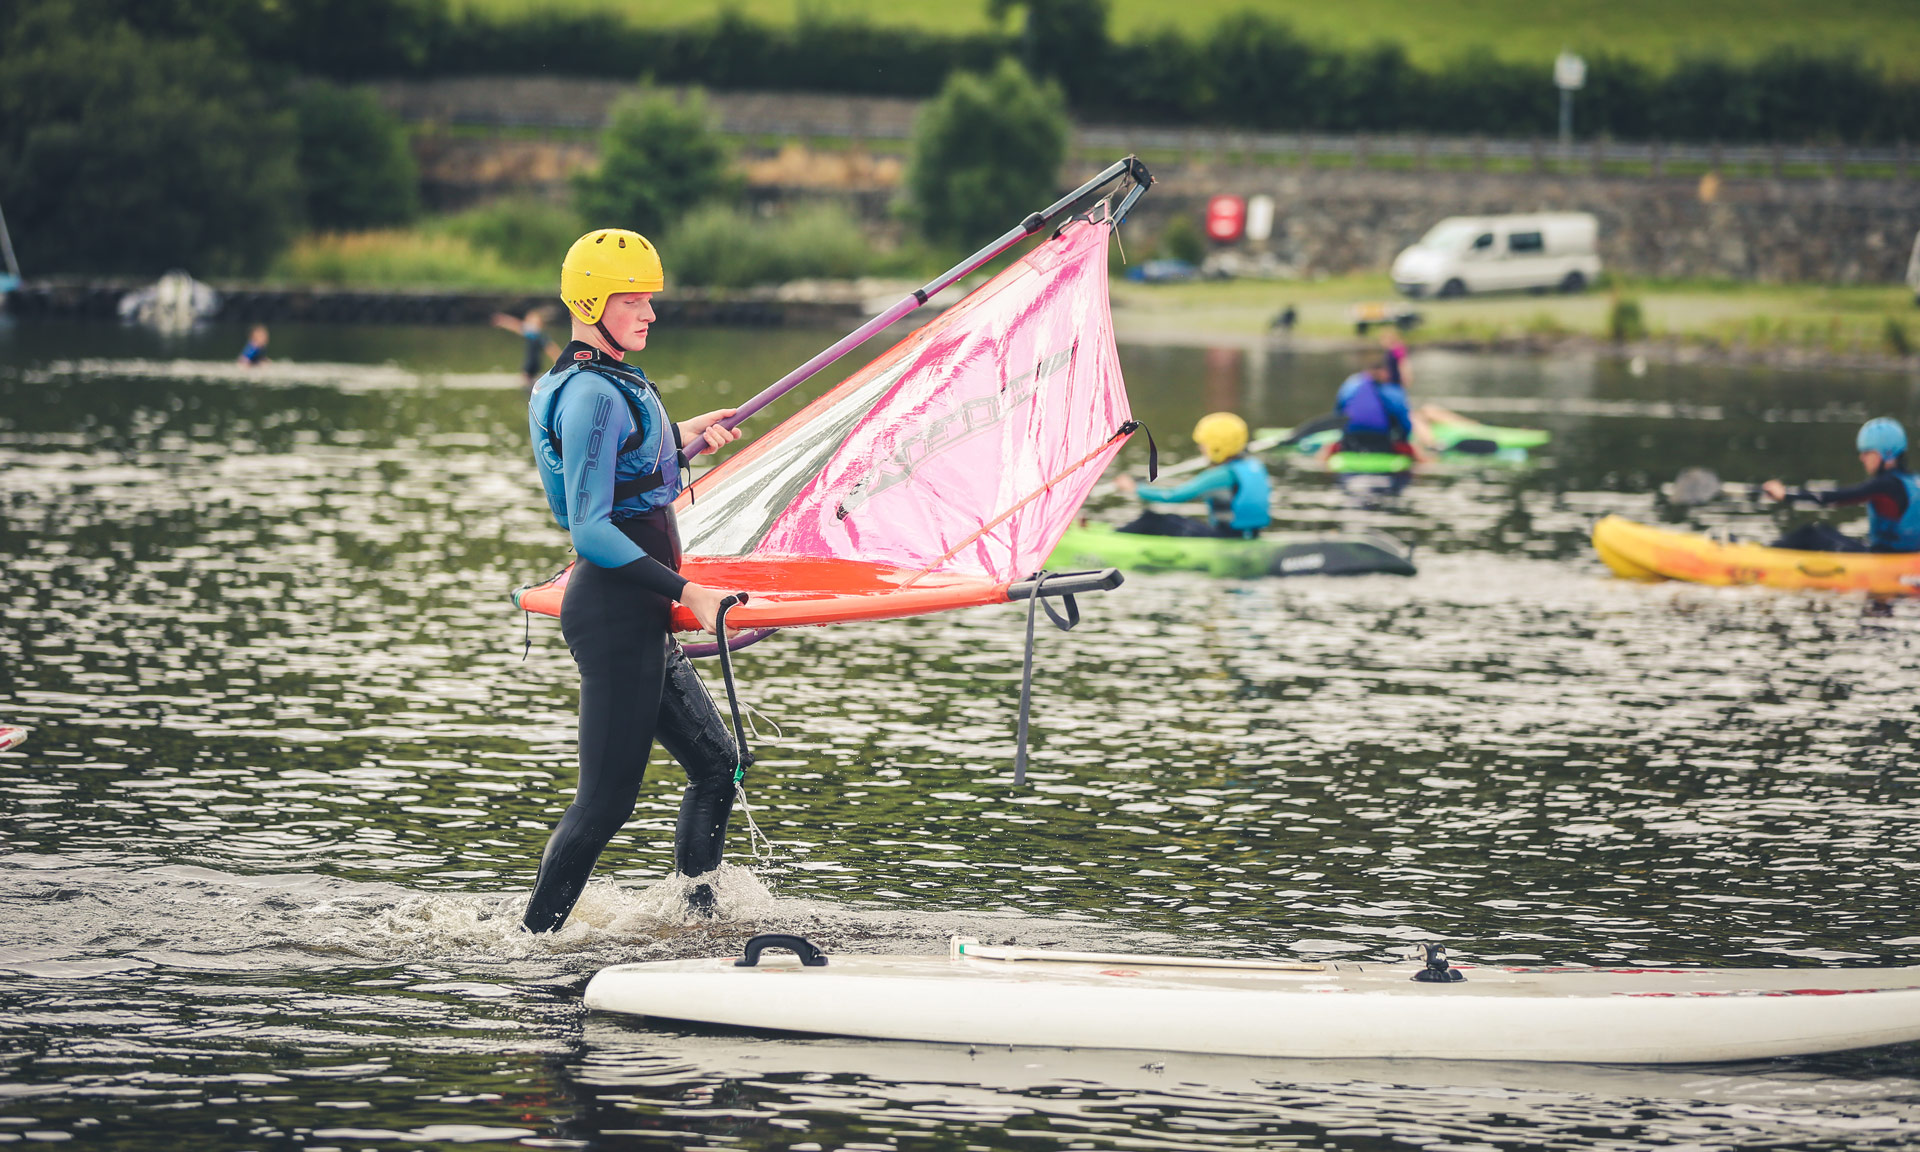 Man takes part in water activities on Llyn Tegid